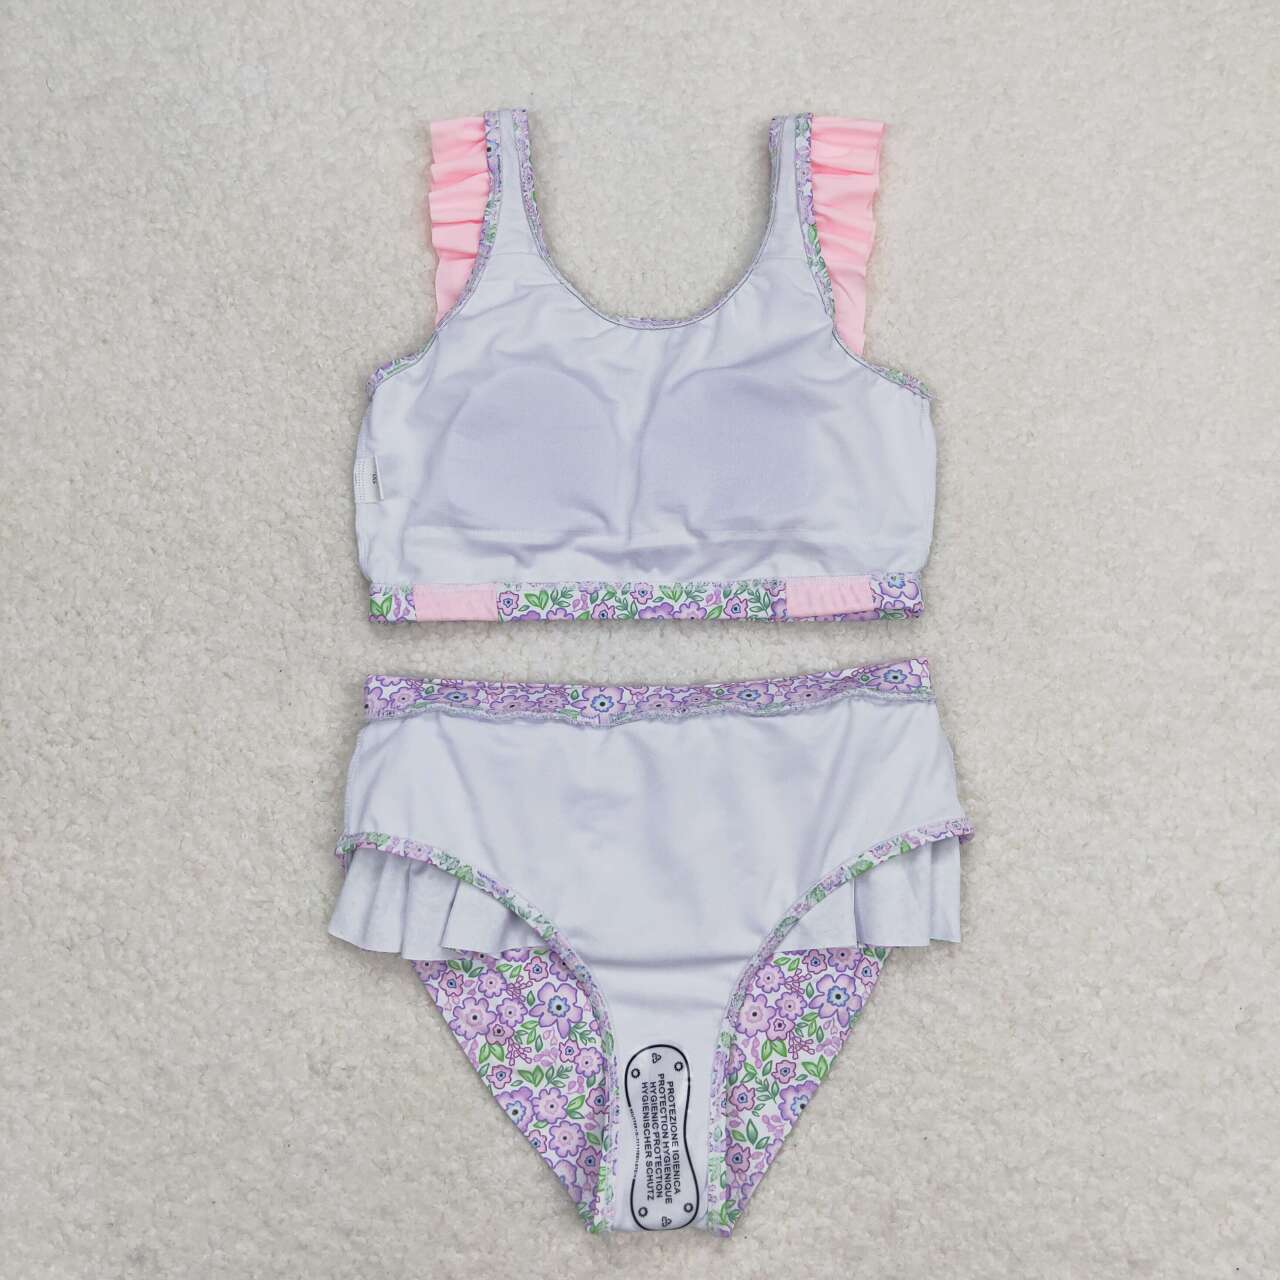 S0332 Pink purple floral lace bathing suit